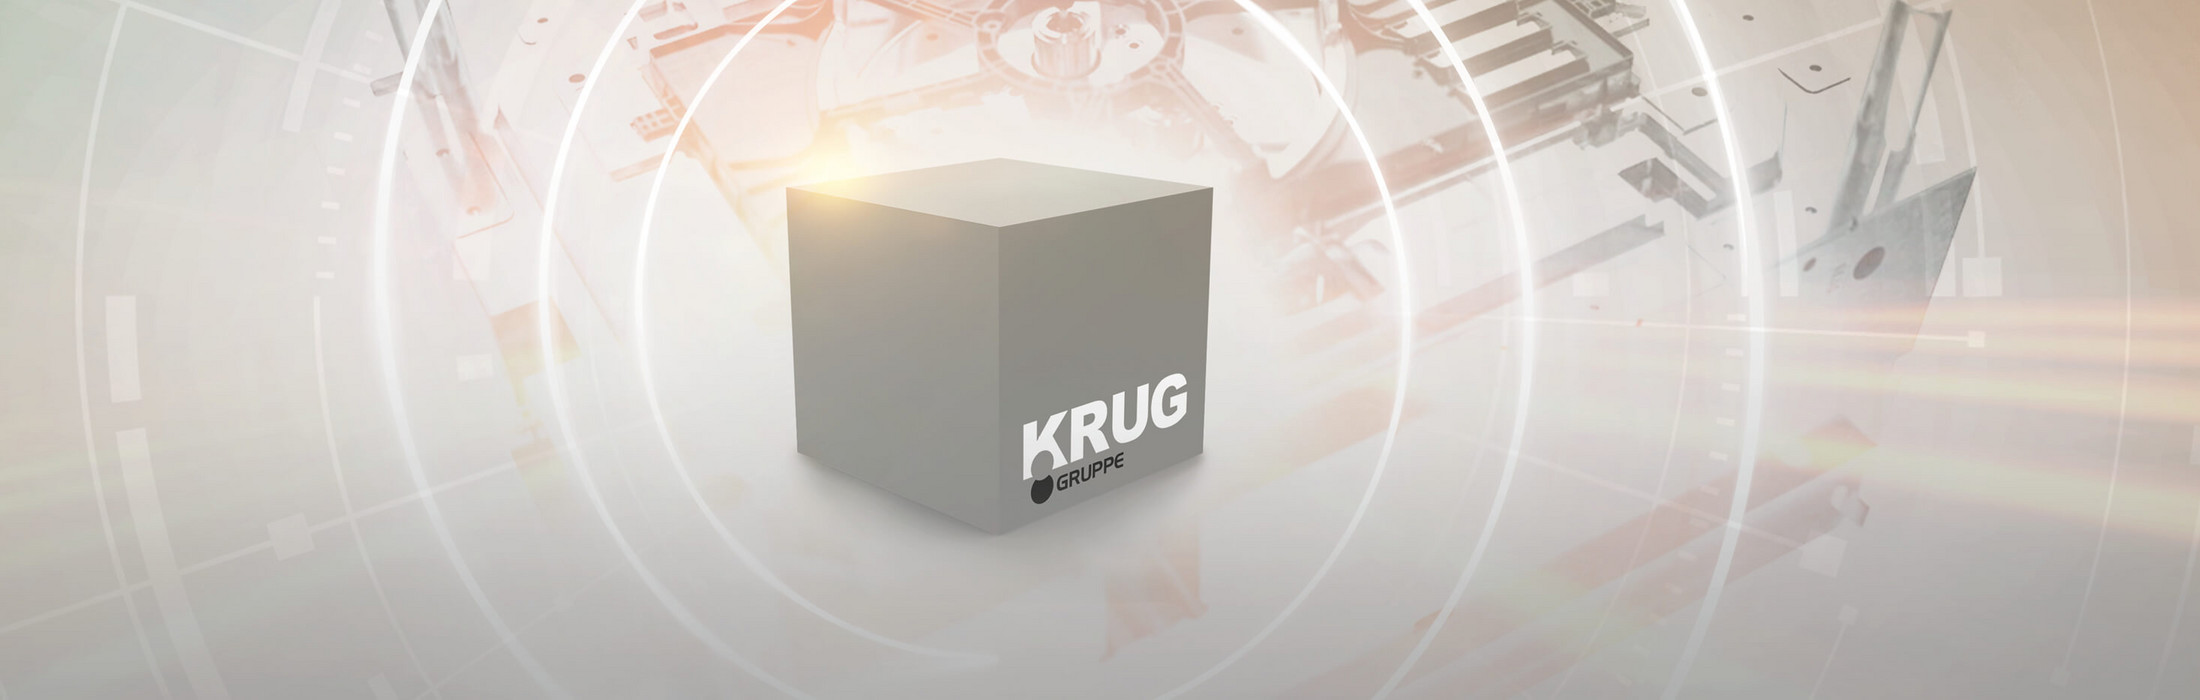 Ein animierter Würfel mit dem KRUG-Logo darauf.